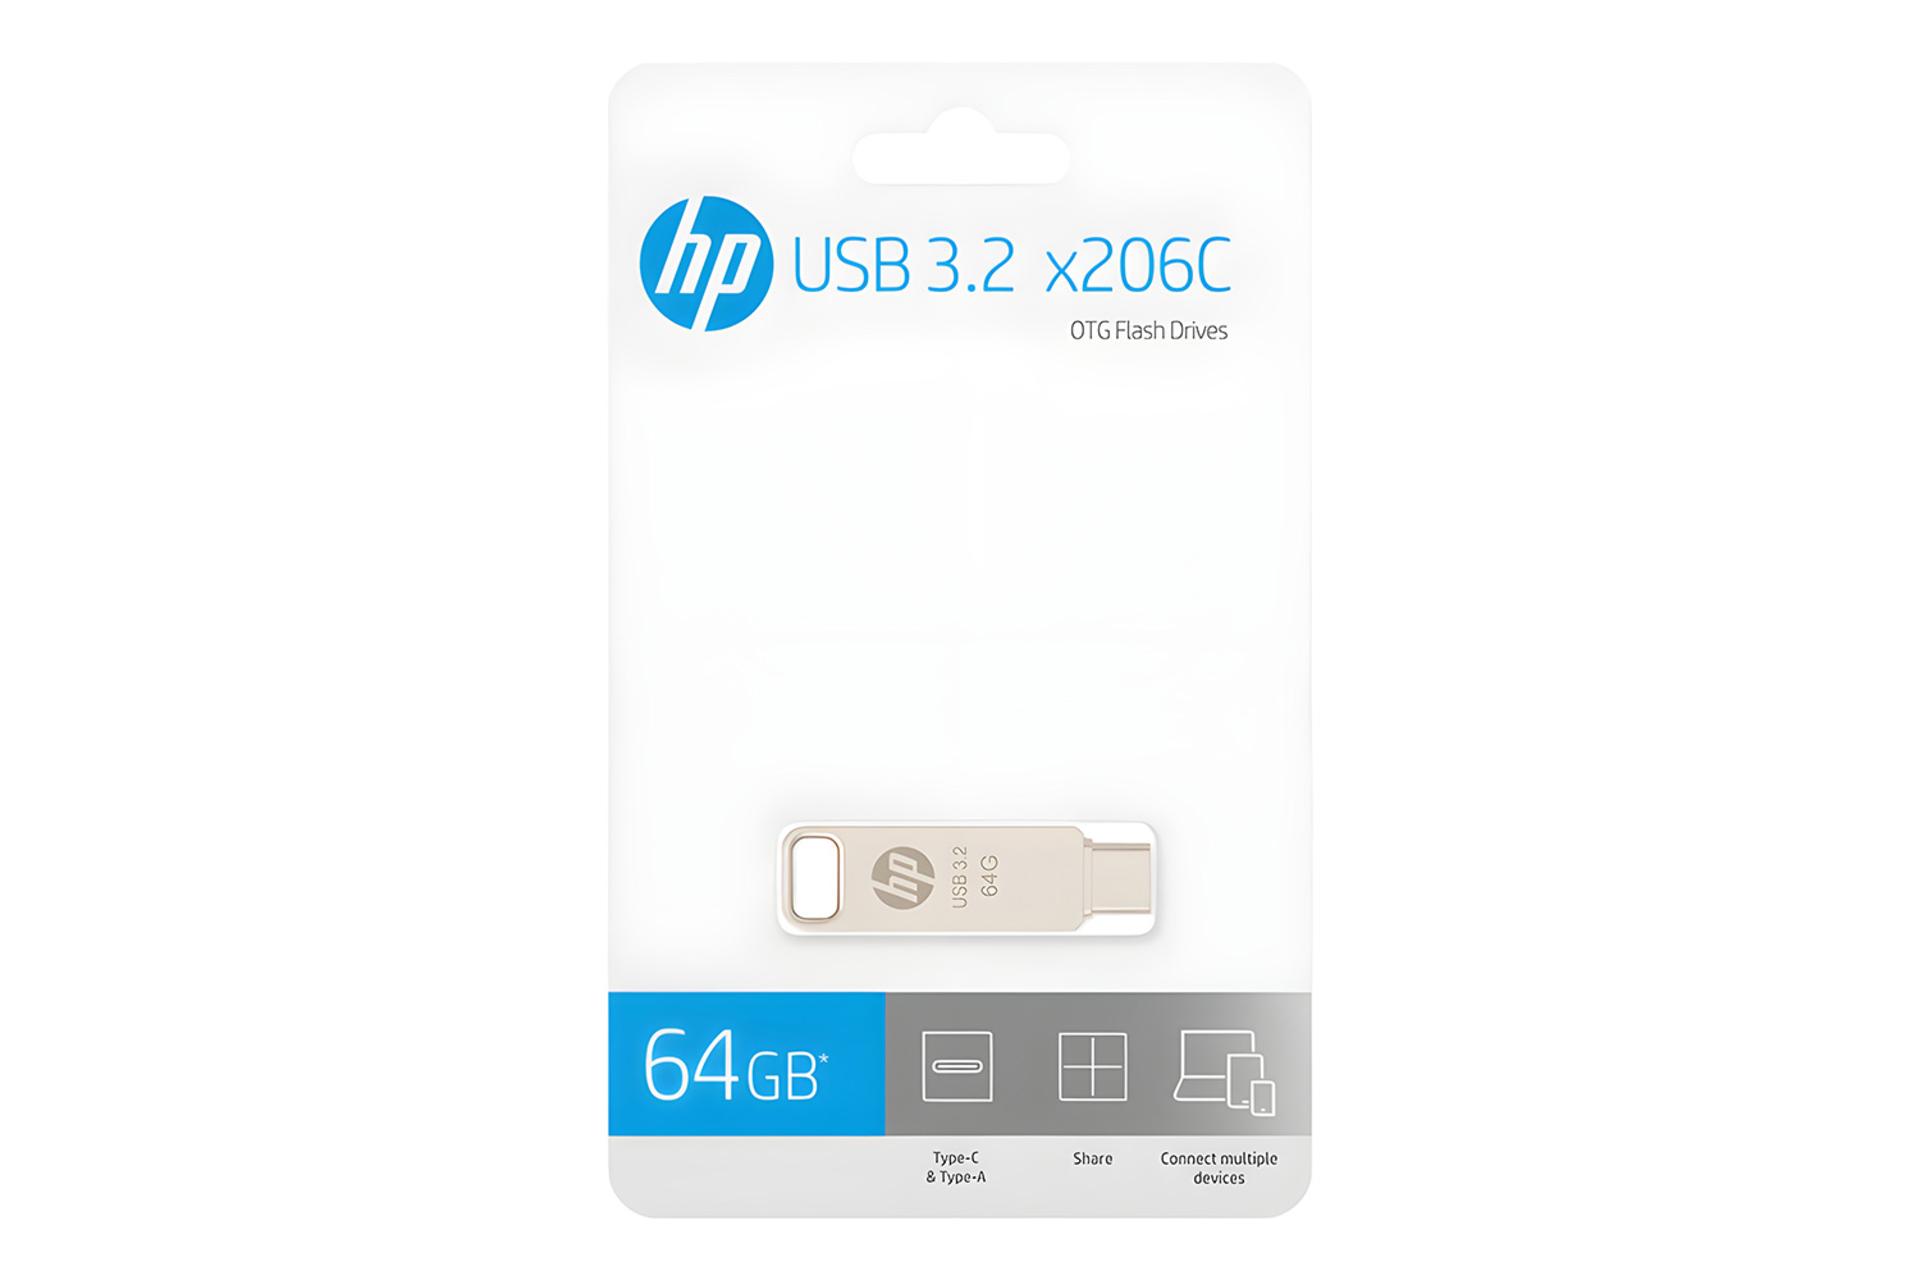 جعبه فلش مموری اچ پی HP x206c 64GB USB 3.2